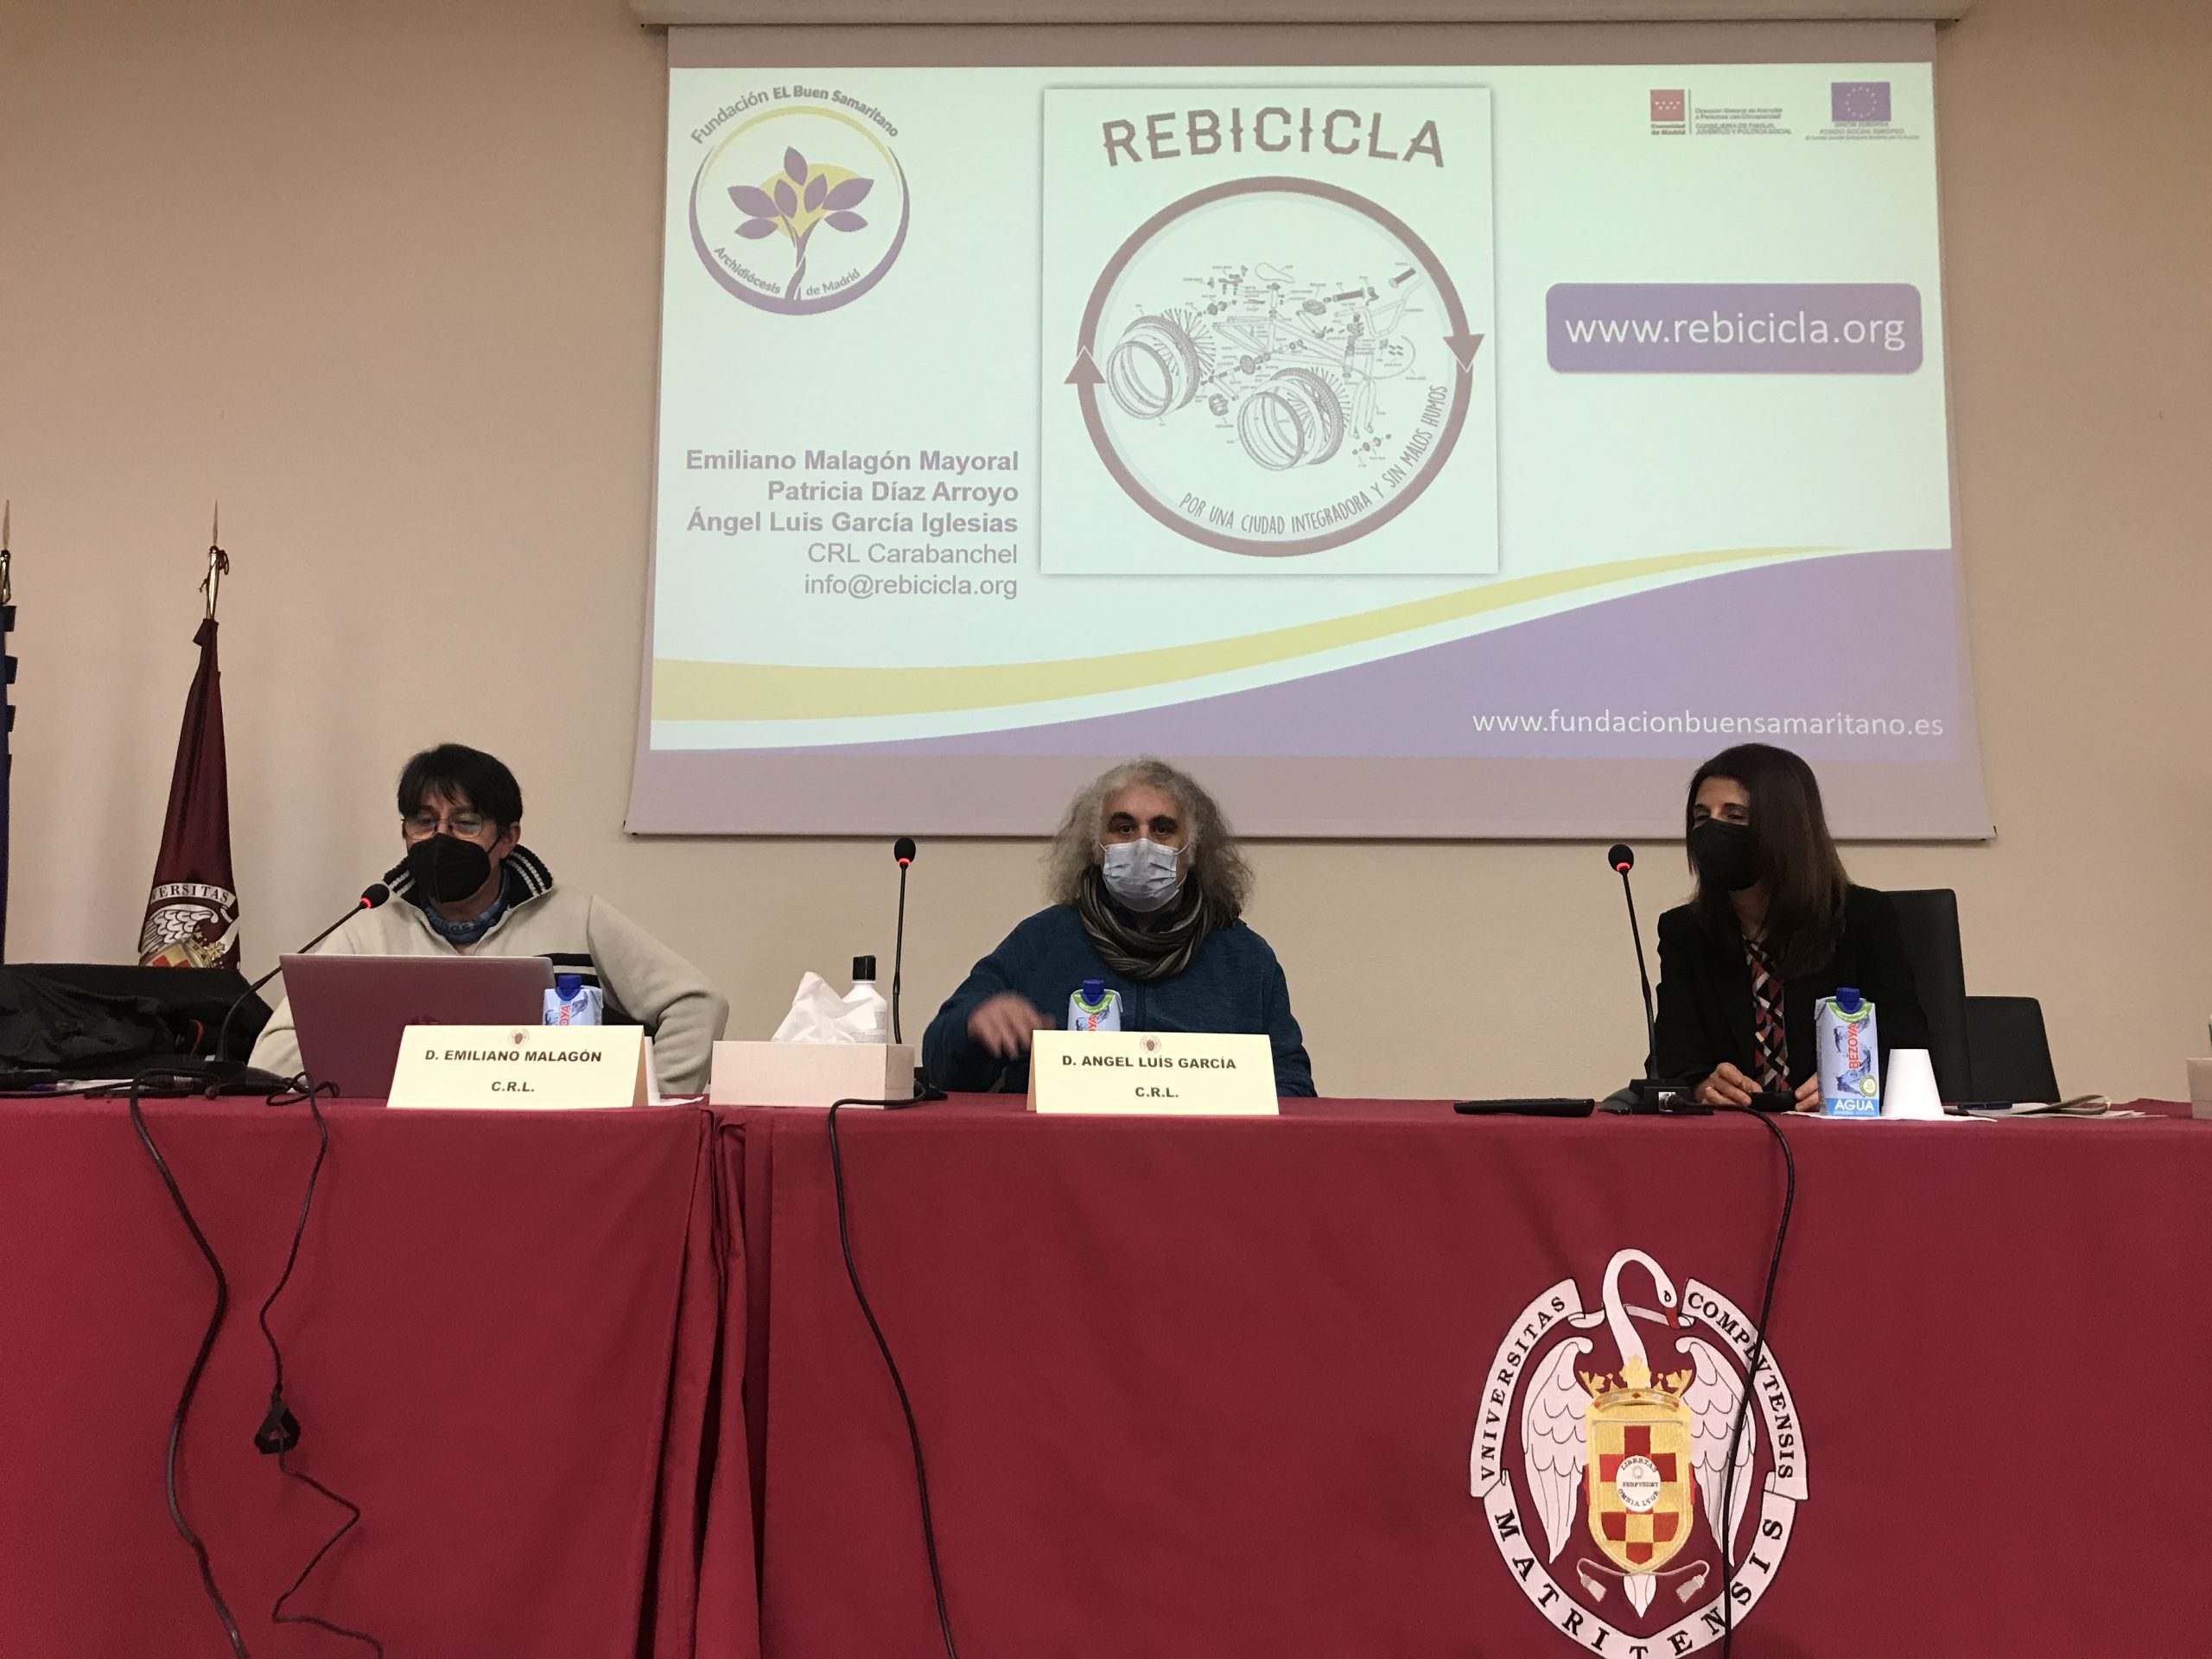 Rebicicla se presentó en la Universidad Complutense de Madrid